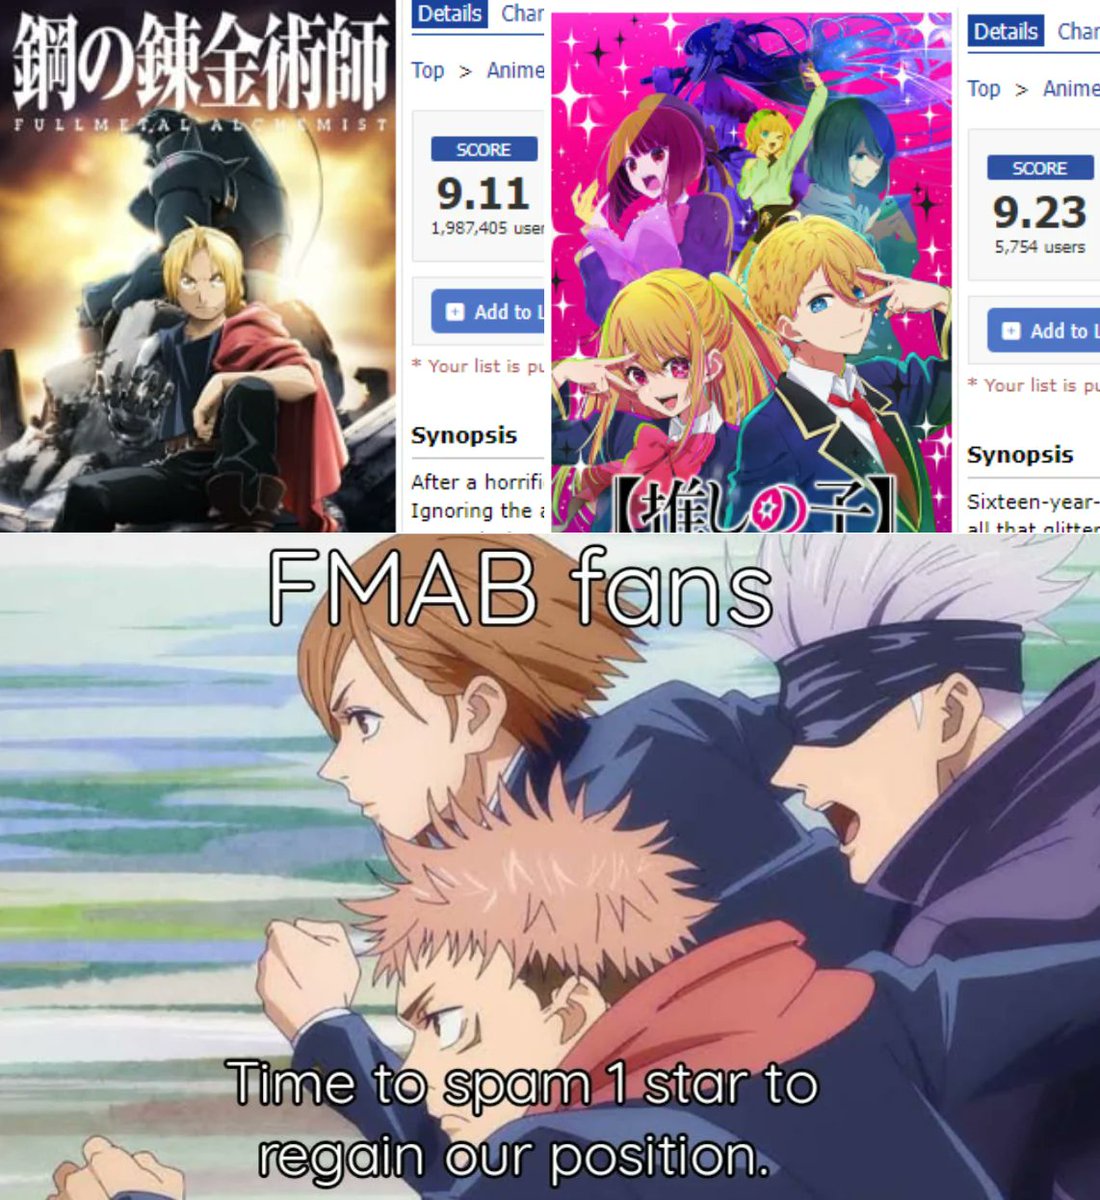 Memes de anime - Memes de anime added a new photo.